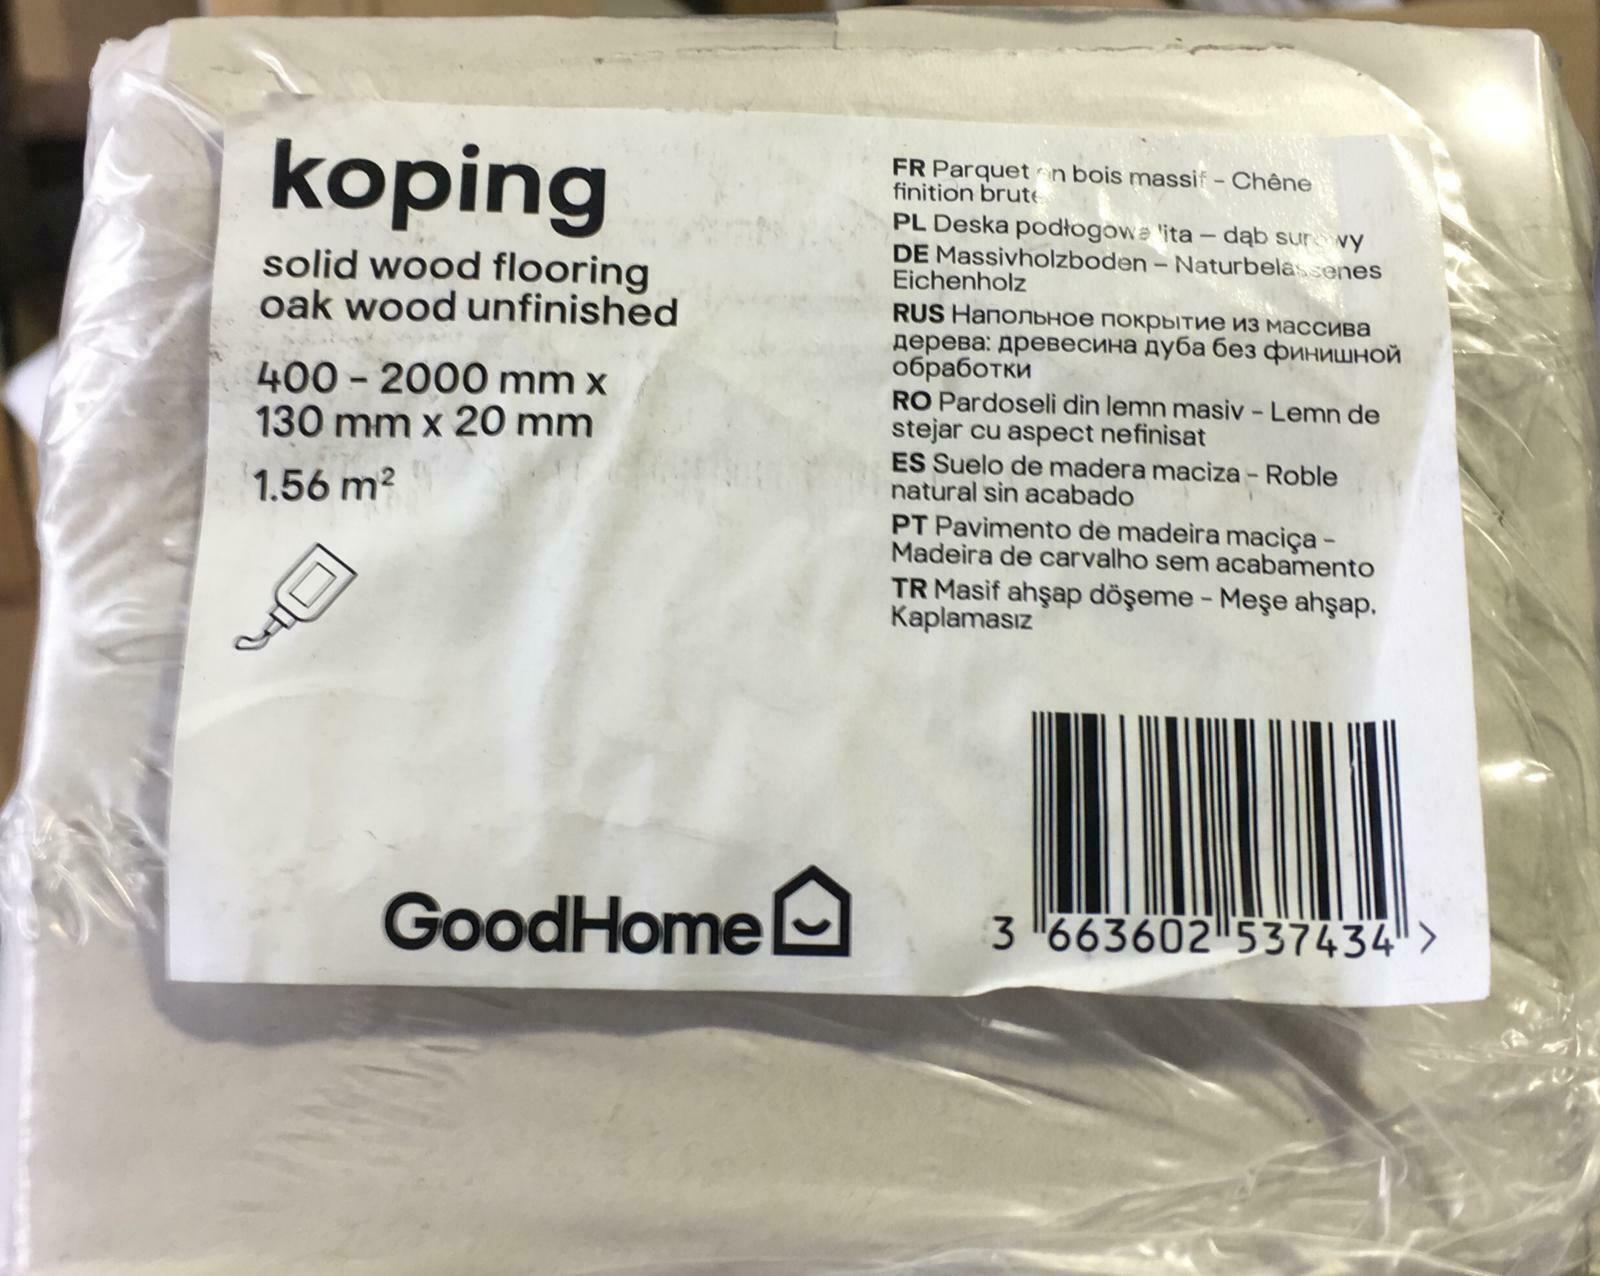 4 Packs of GoodHome Koping Natural Oak Solid wood flooring, -7434